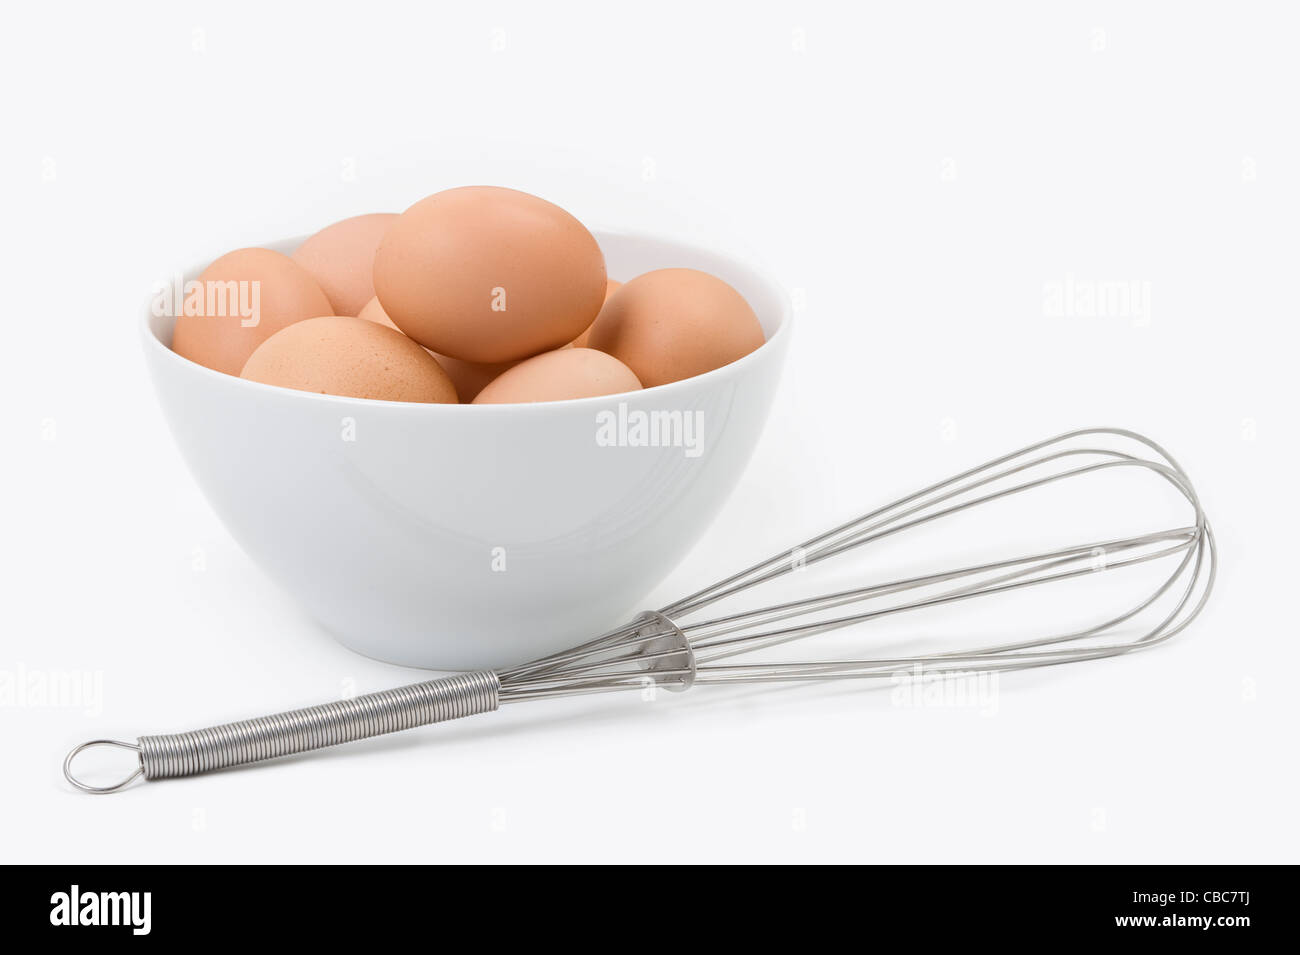 Brown uova di galline in una vaschetta di colore bianco con un acciaio inossidabile sbattere contro uno sfondo bianco Foto Stock